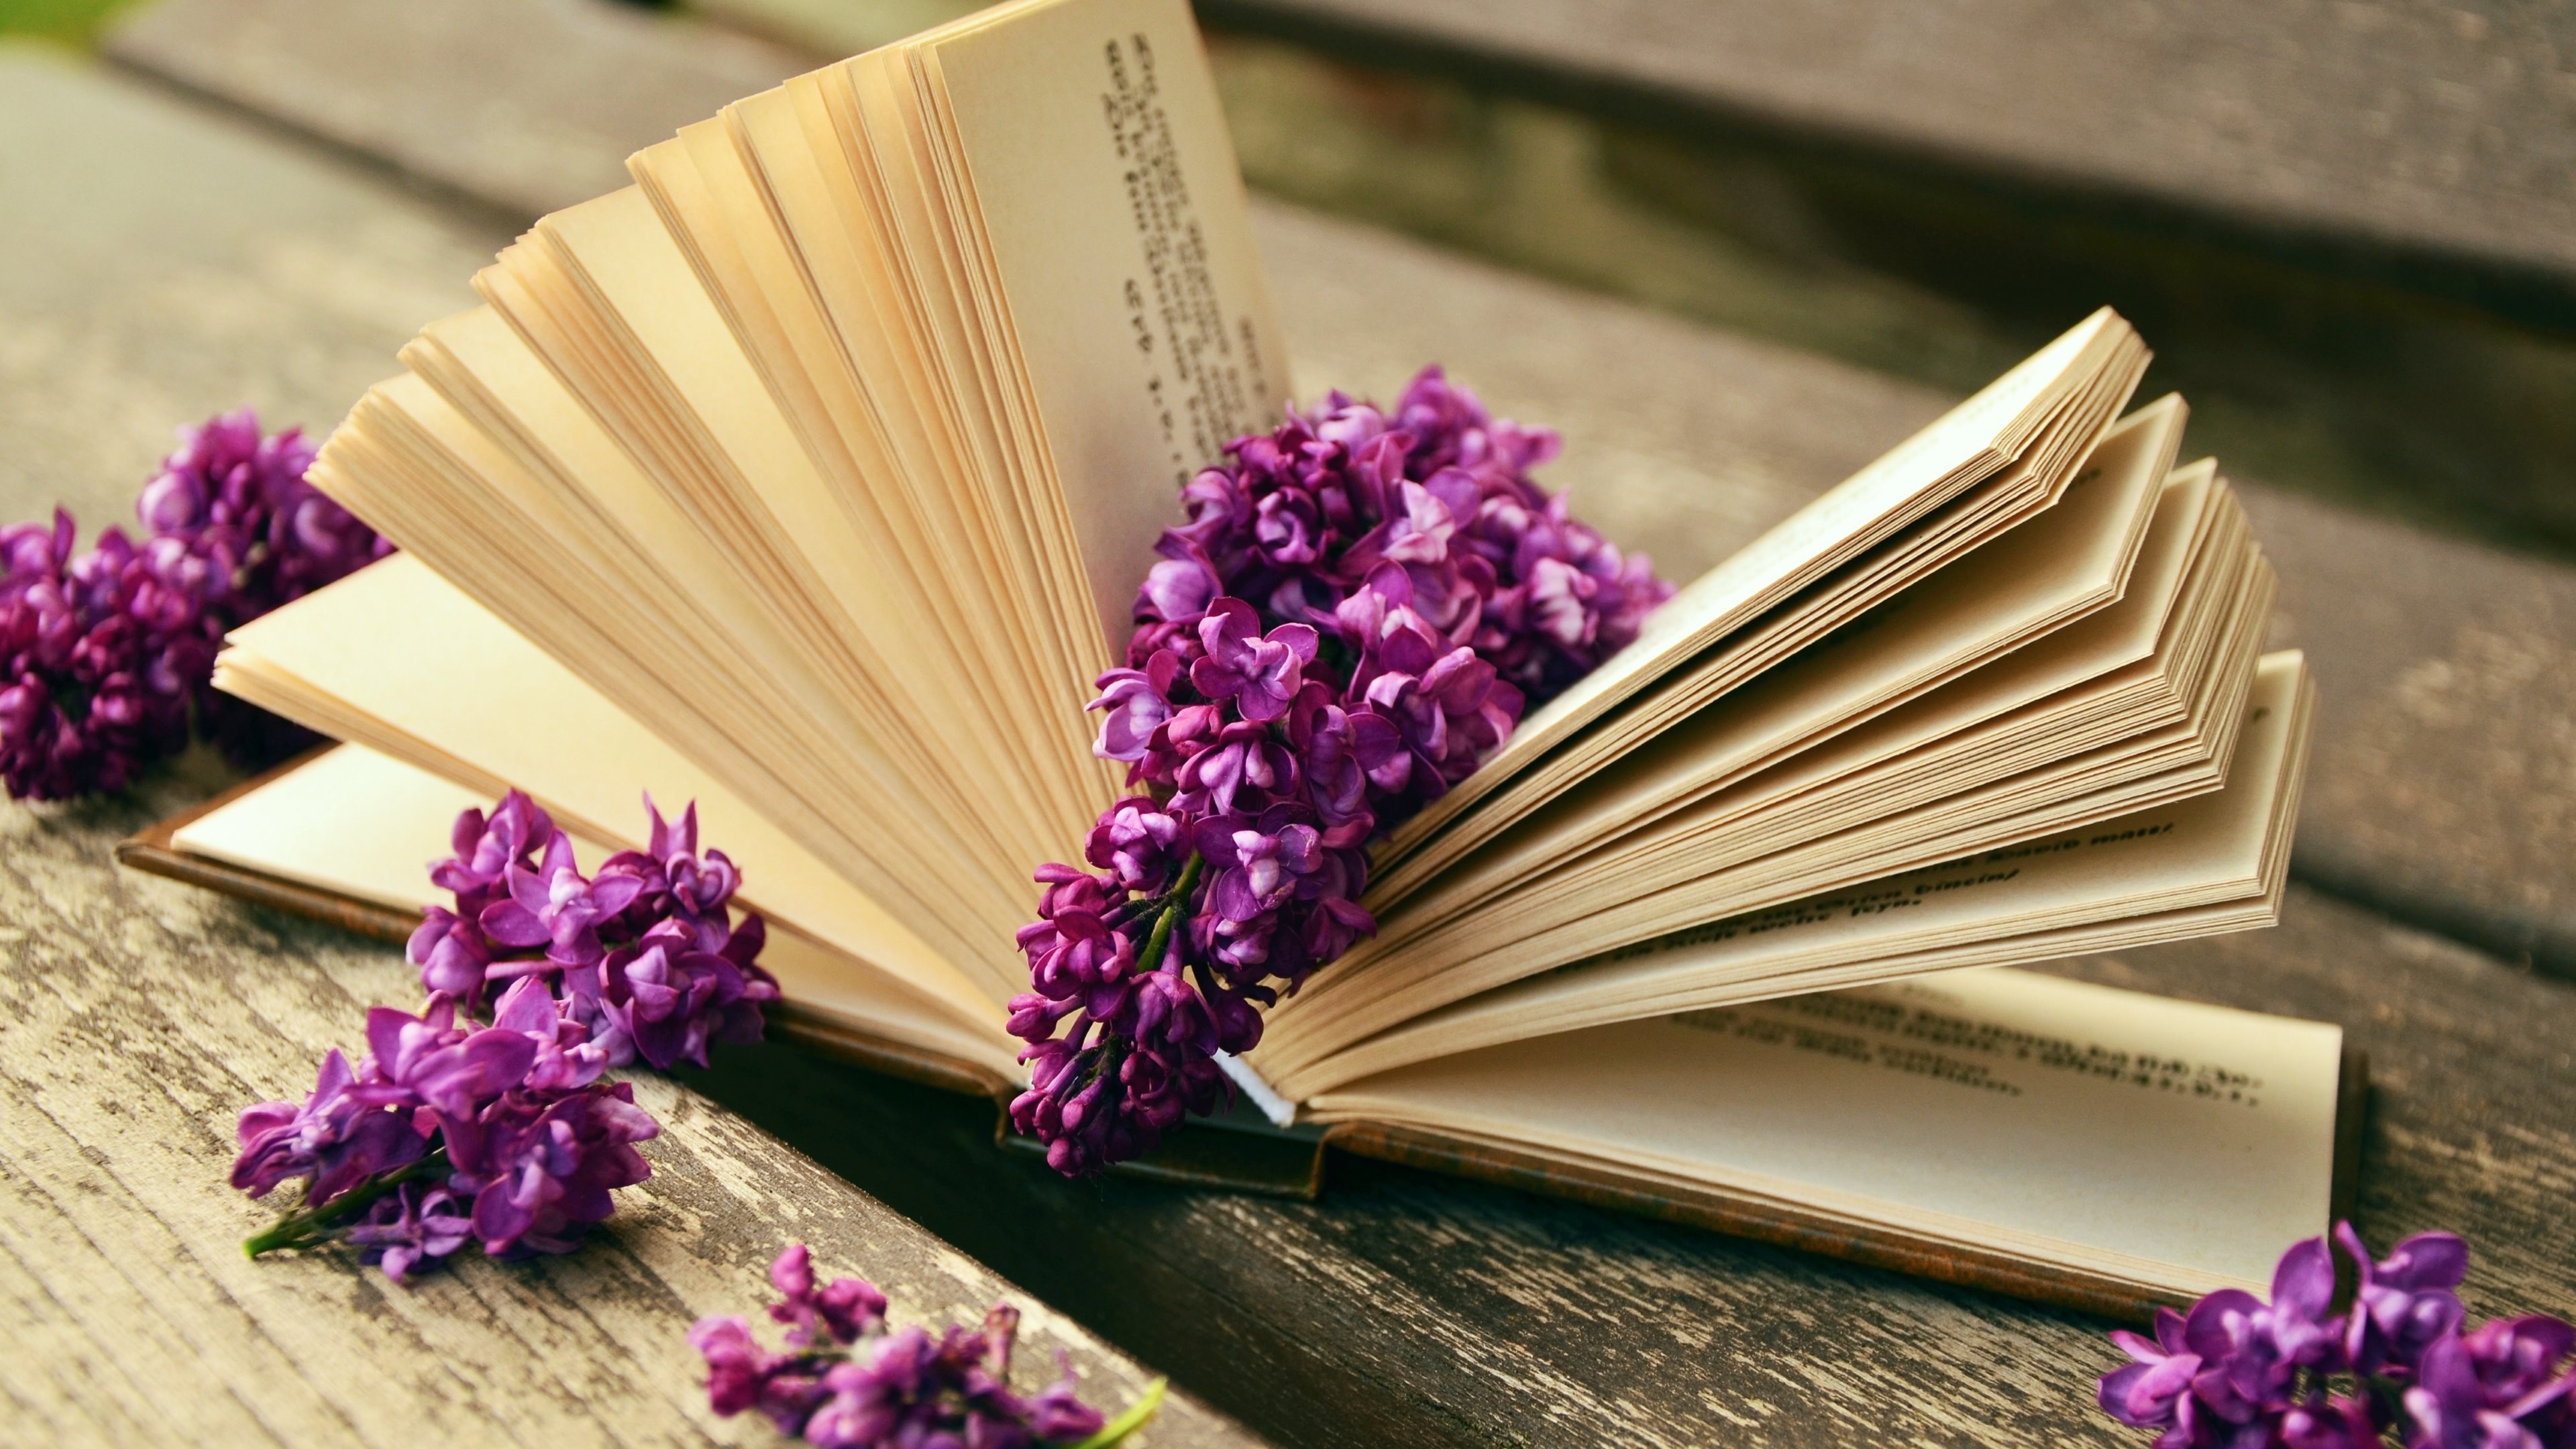 3840x2160 Man Made - Book Lilac Flower Still Life Wallpaper